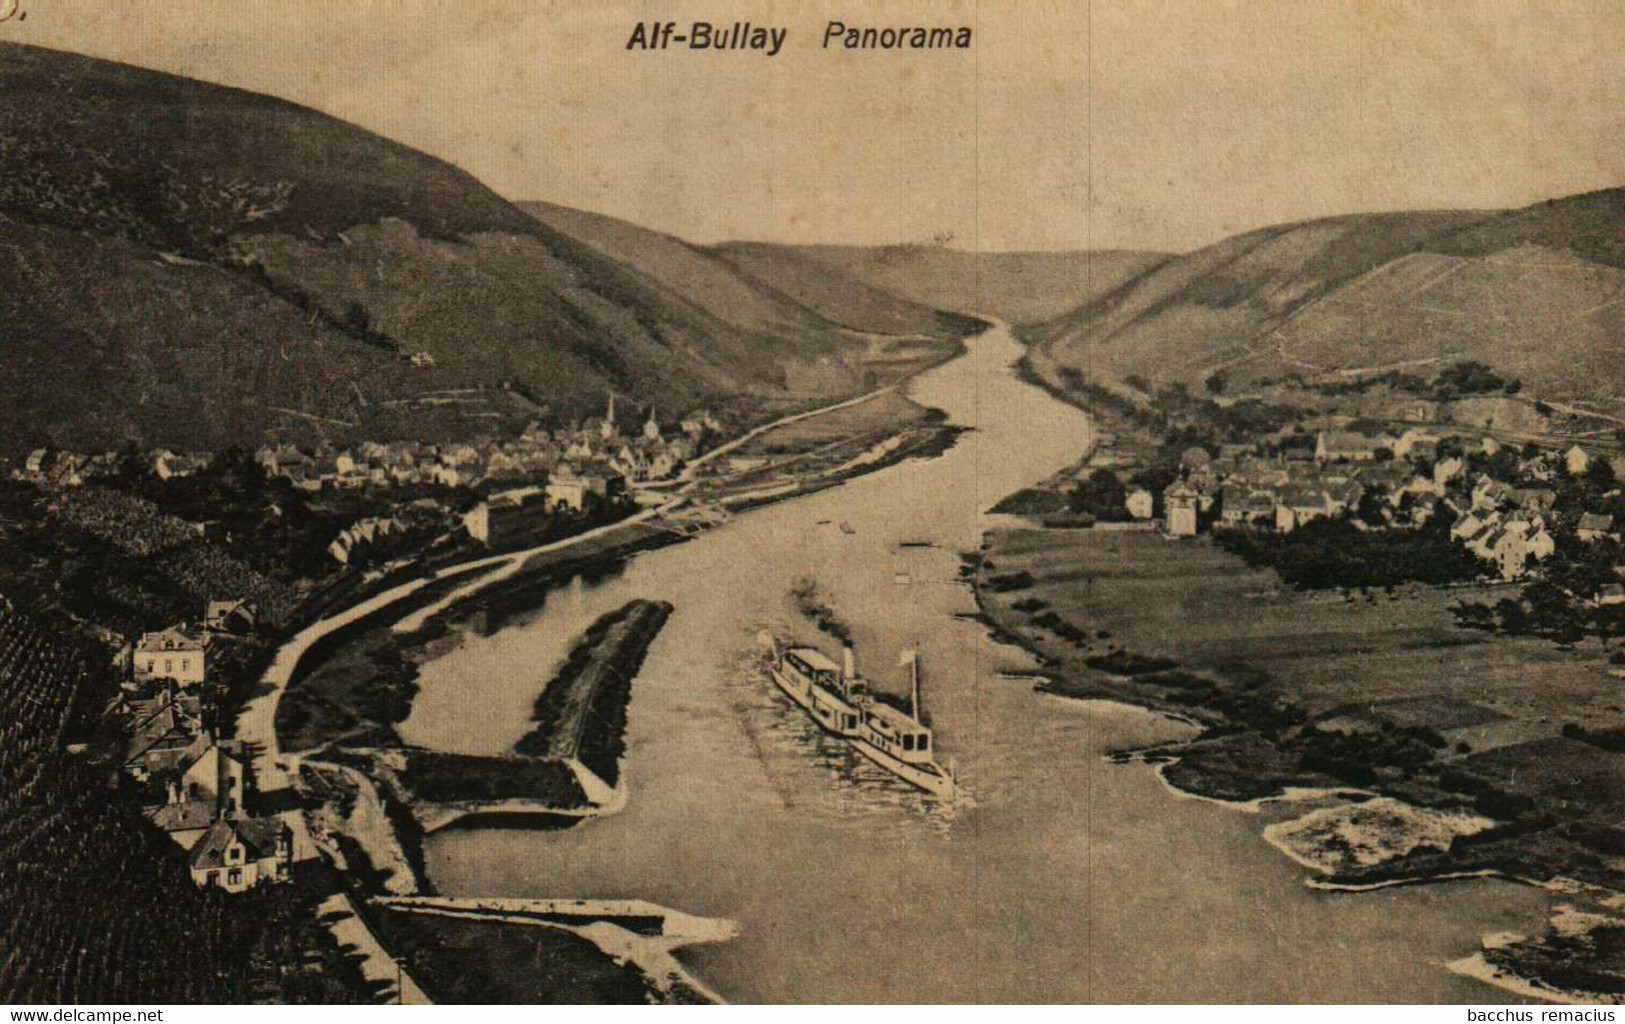 ALF-Bullay Panorama - Alf-Bullay